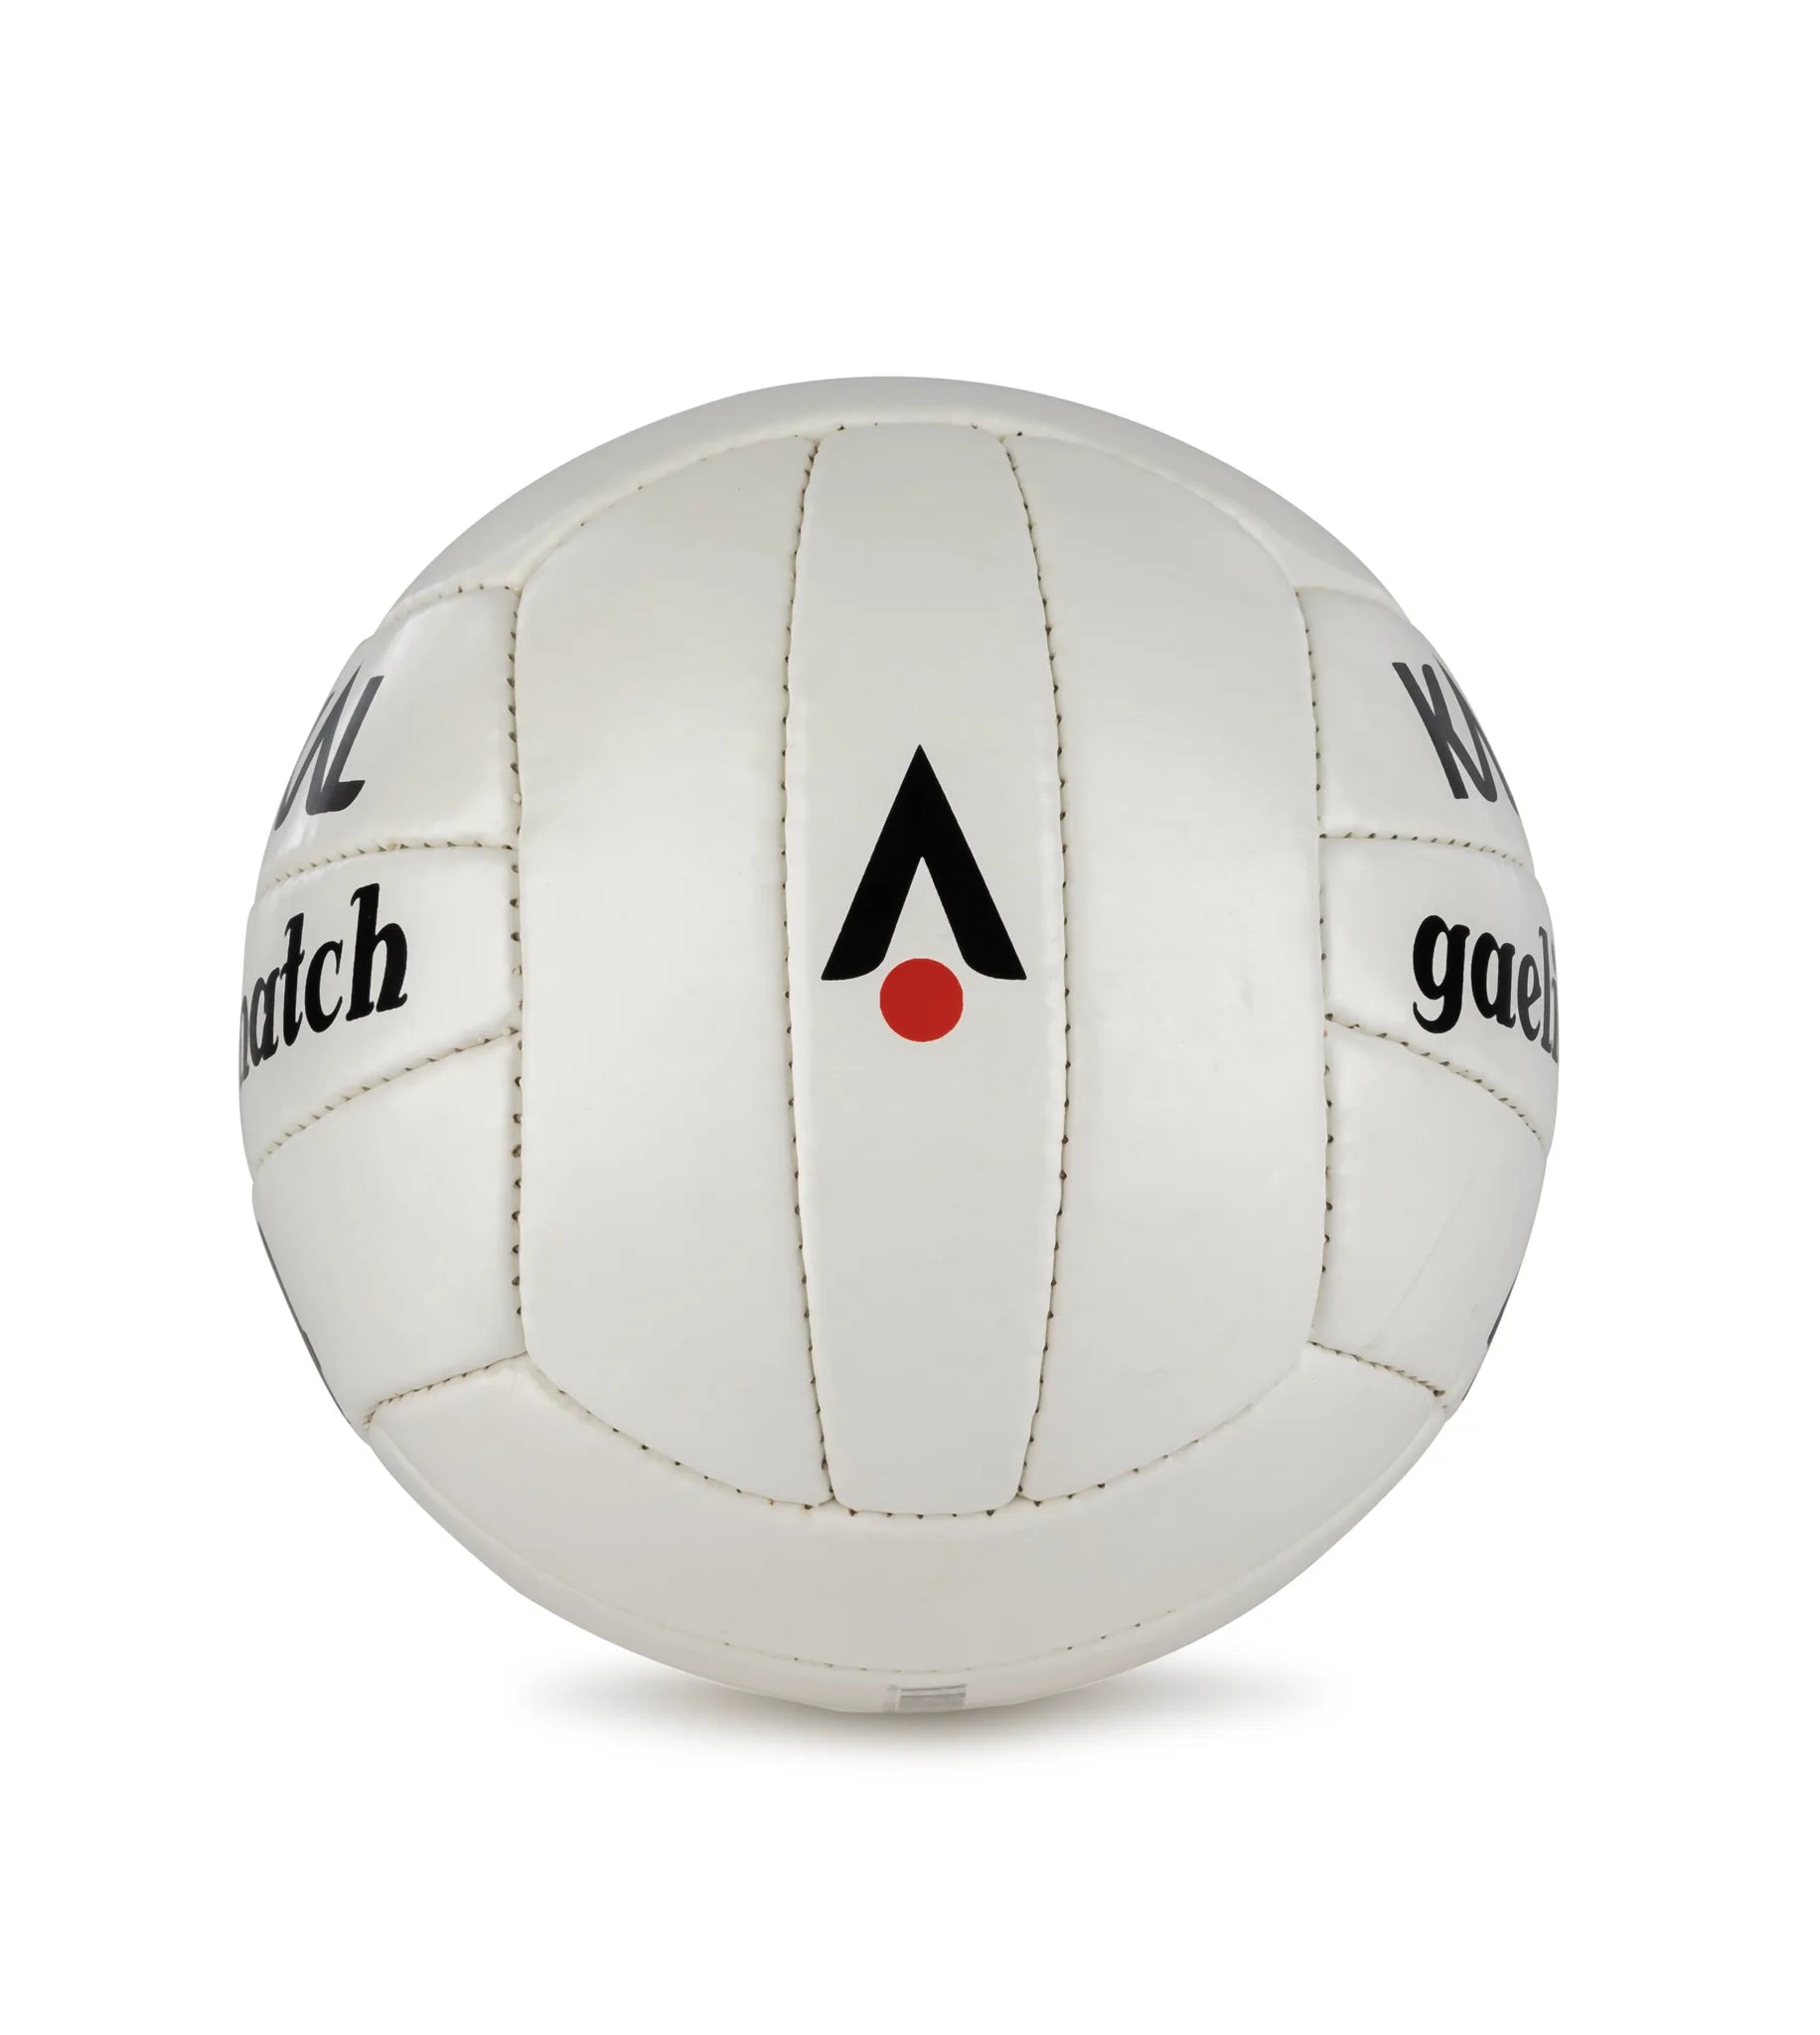 Karakal Gaelic Match Ball Size 5